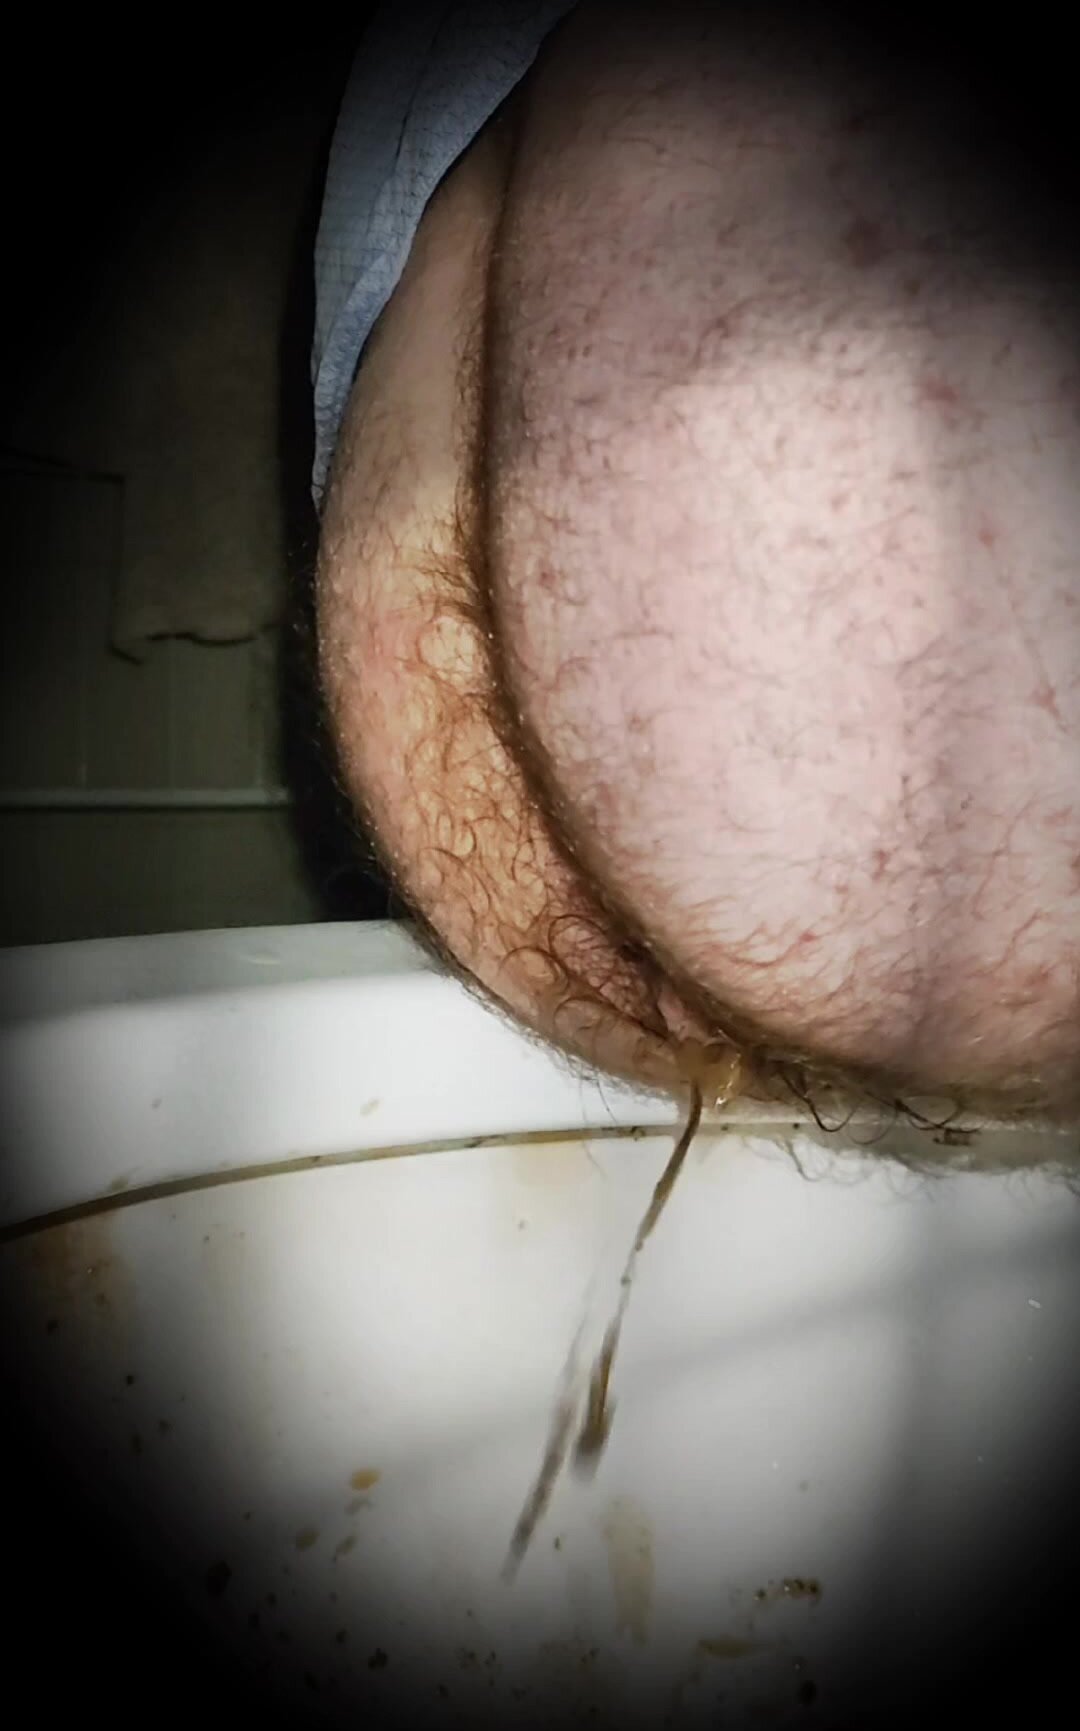 Diarrhea peeking men's bathroom